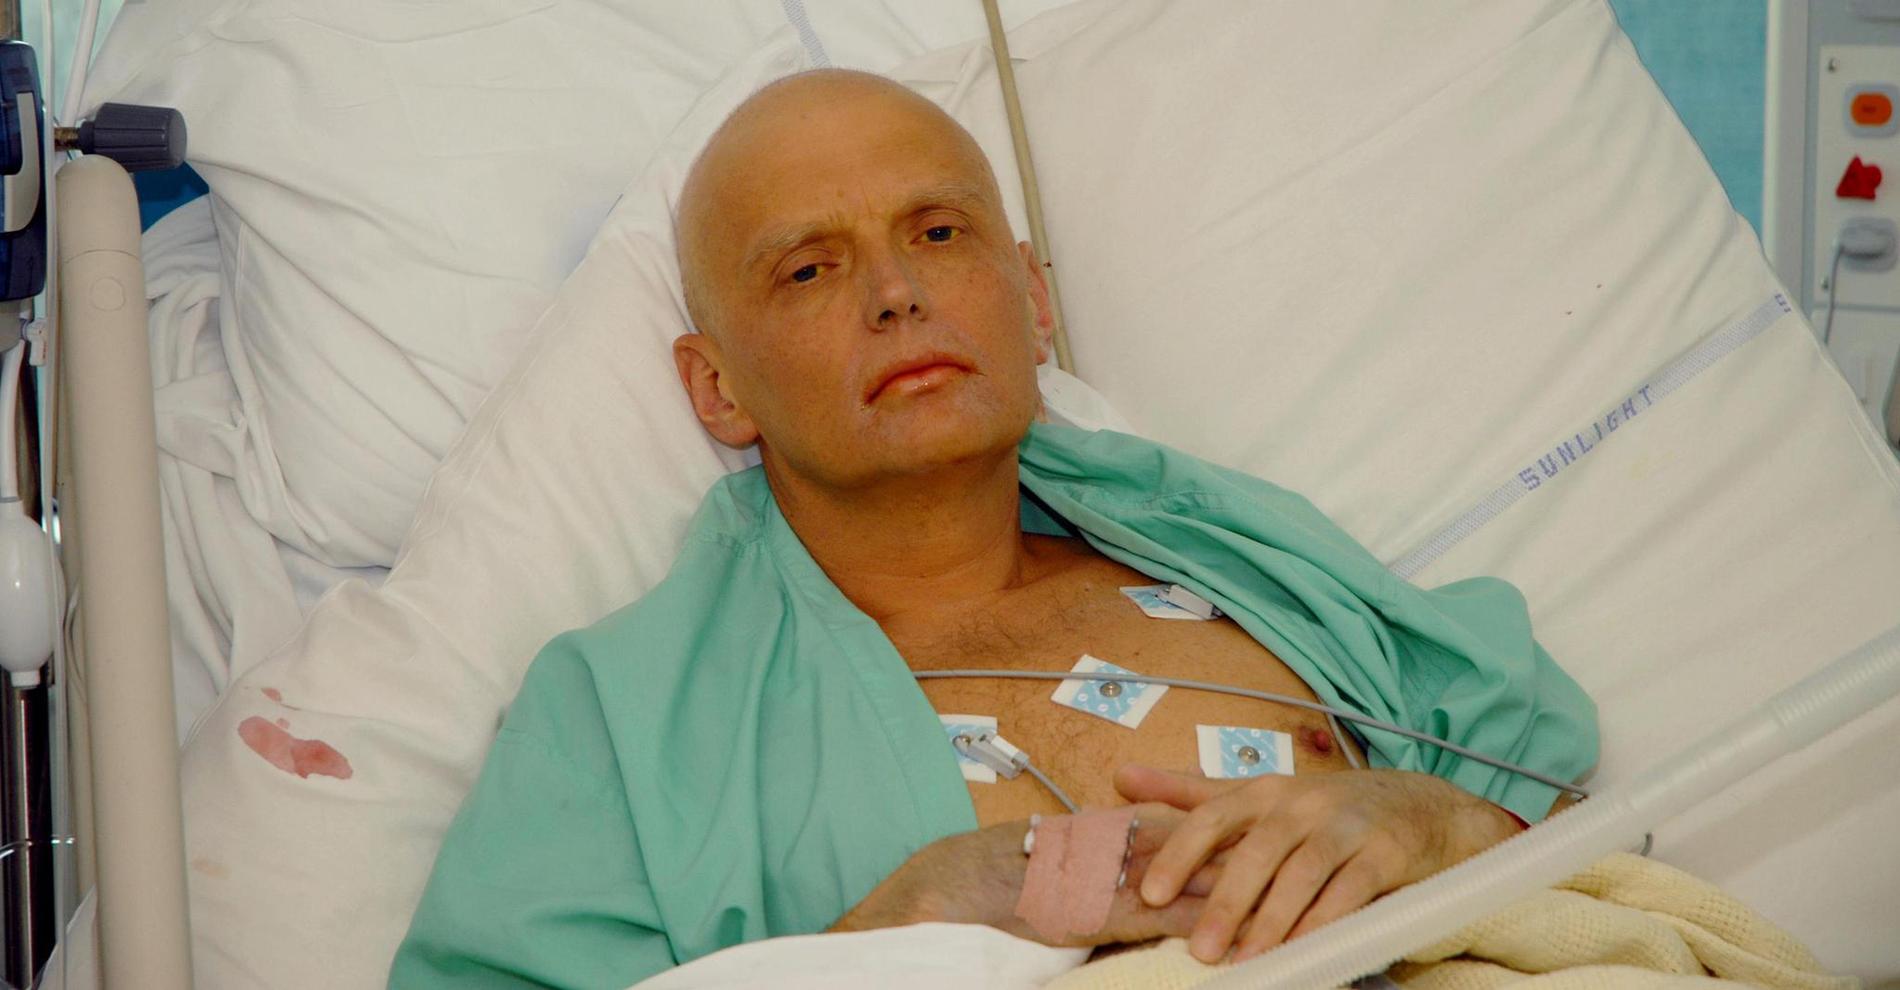 Alexandr Litvinenkos familj släppte den här bilden på honom från sjukhuset i London, där han behandlades efter förgiftningen. Strax efter dog den 43-årige ex-spionen.